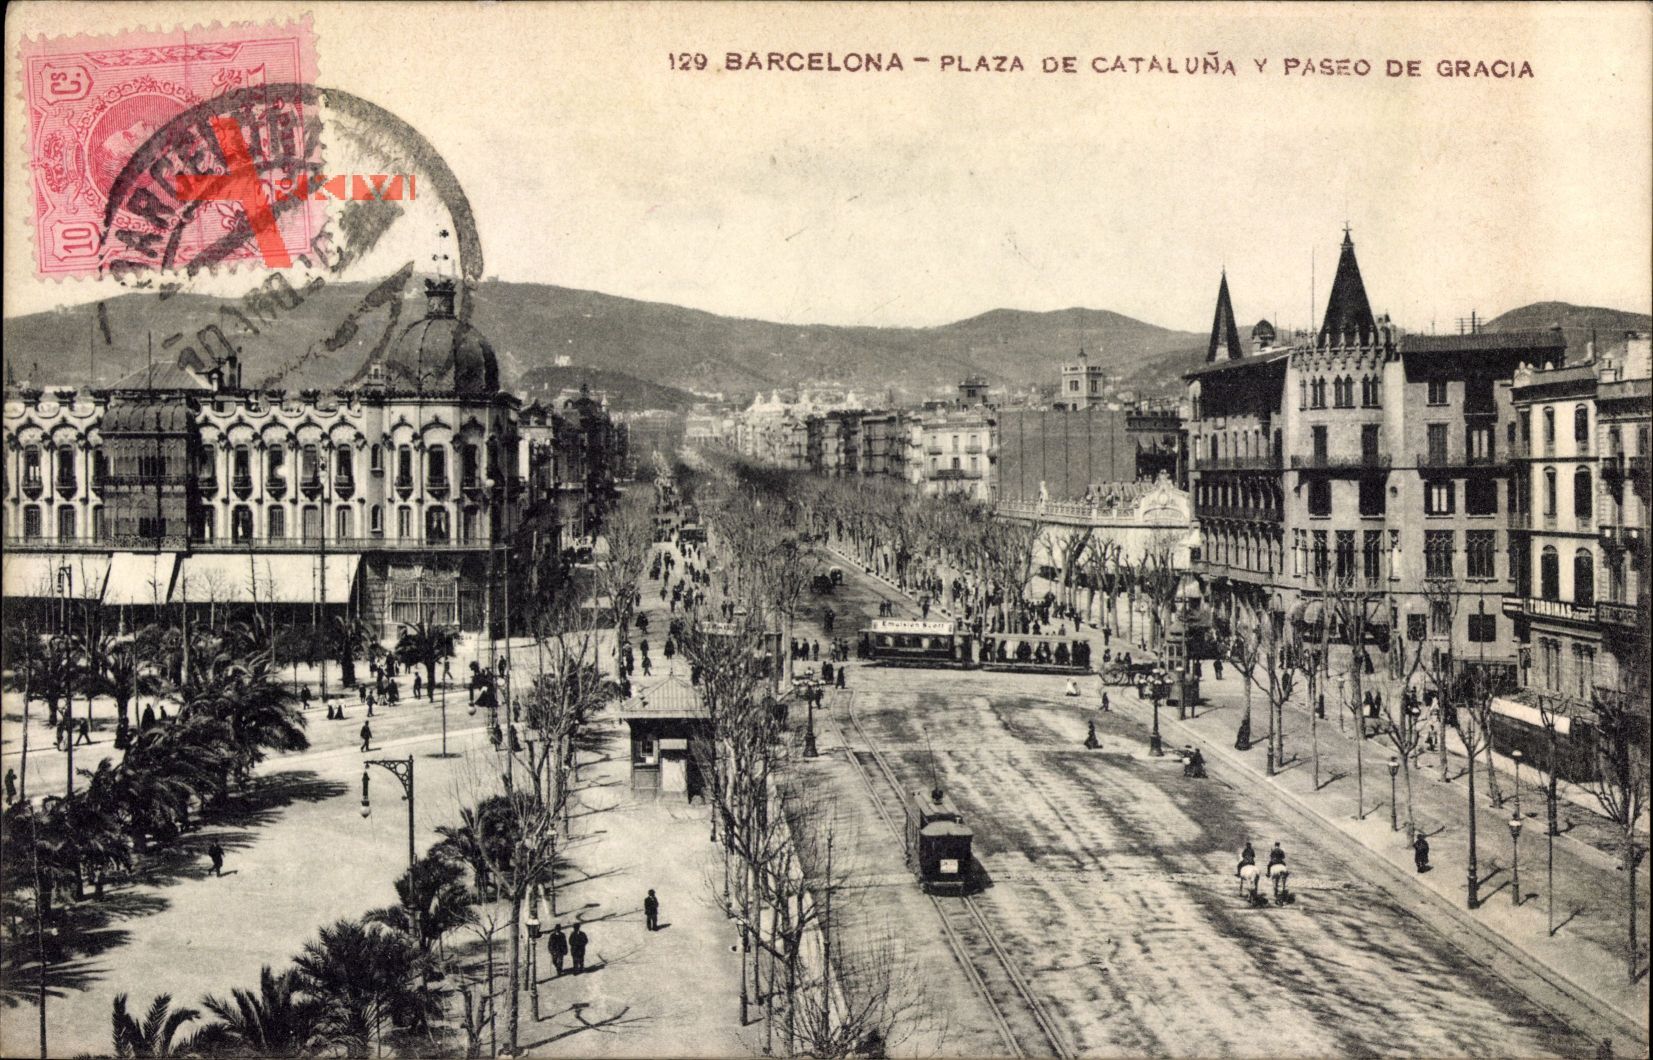 Barcelona Katalonien, Plaza de Cataluna y Pasero de Gracia